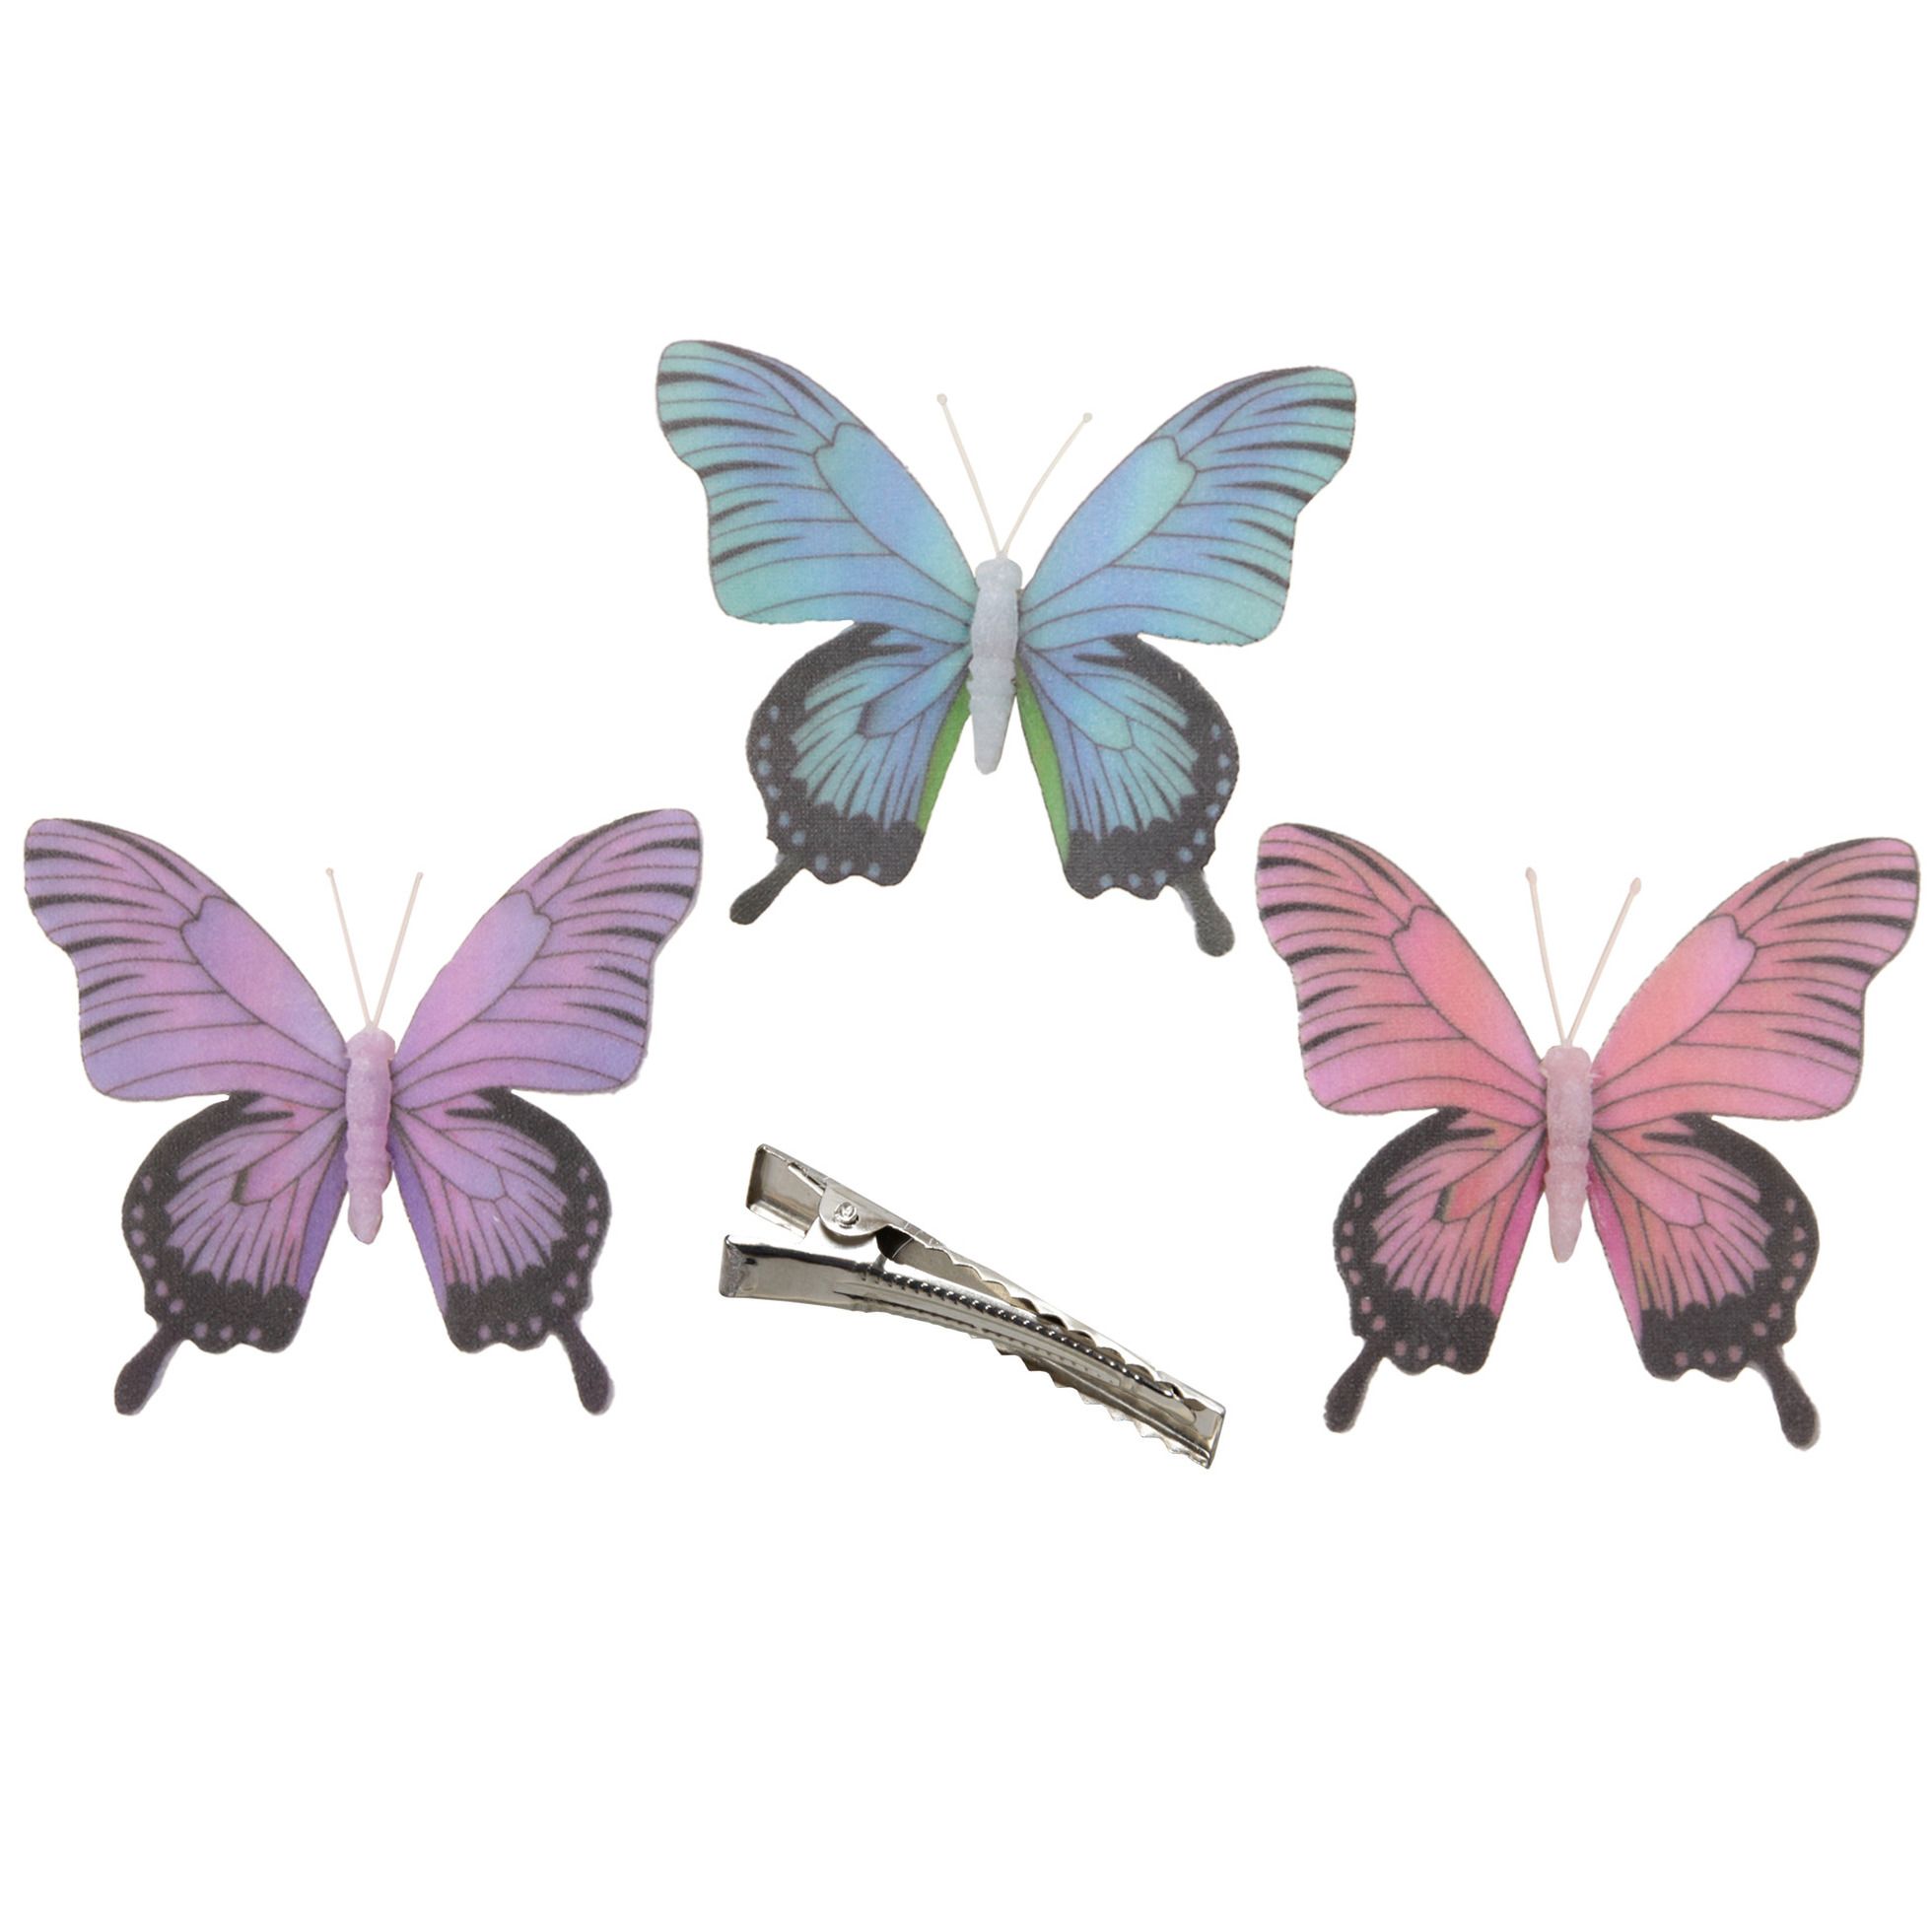 3x stuks decoratie vlinders op clip paars-blauw-roze 12 cm